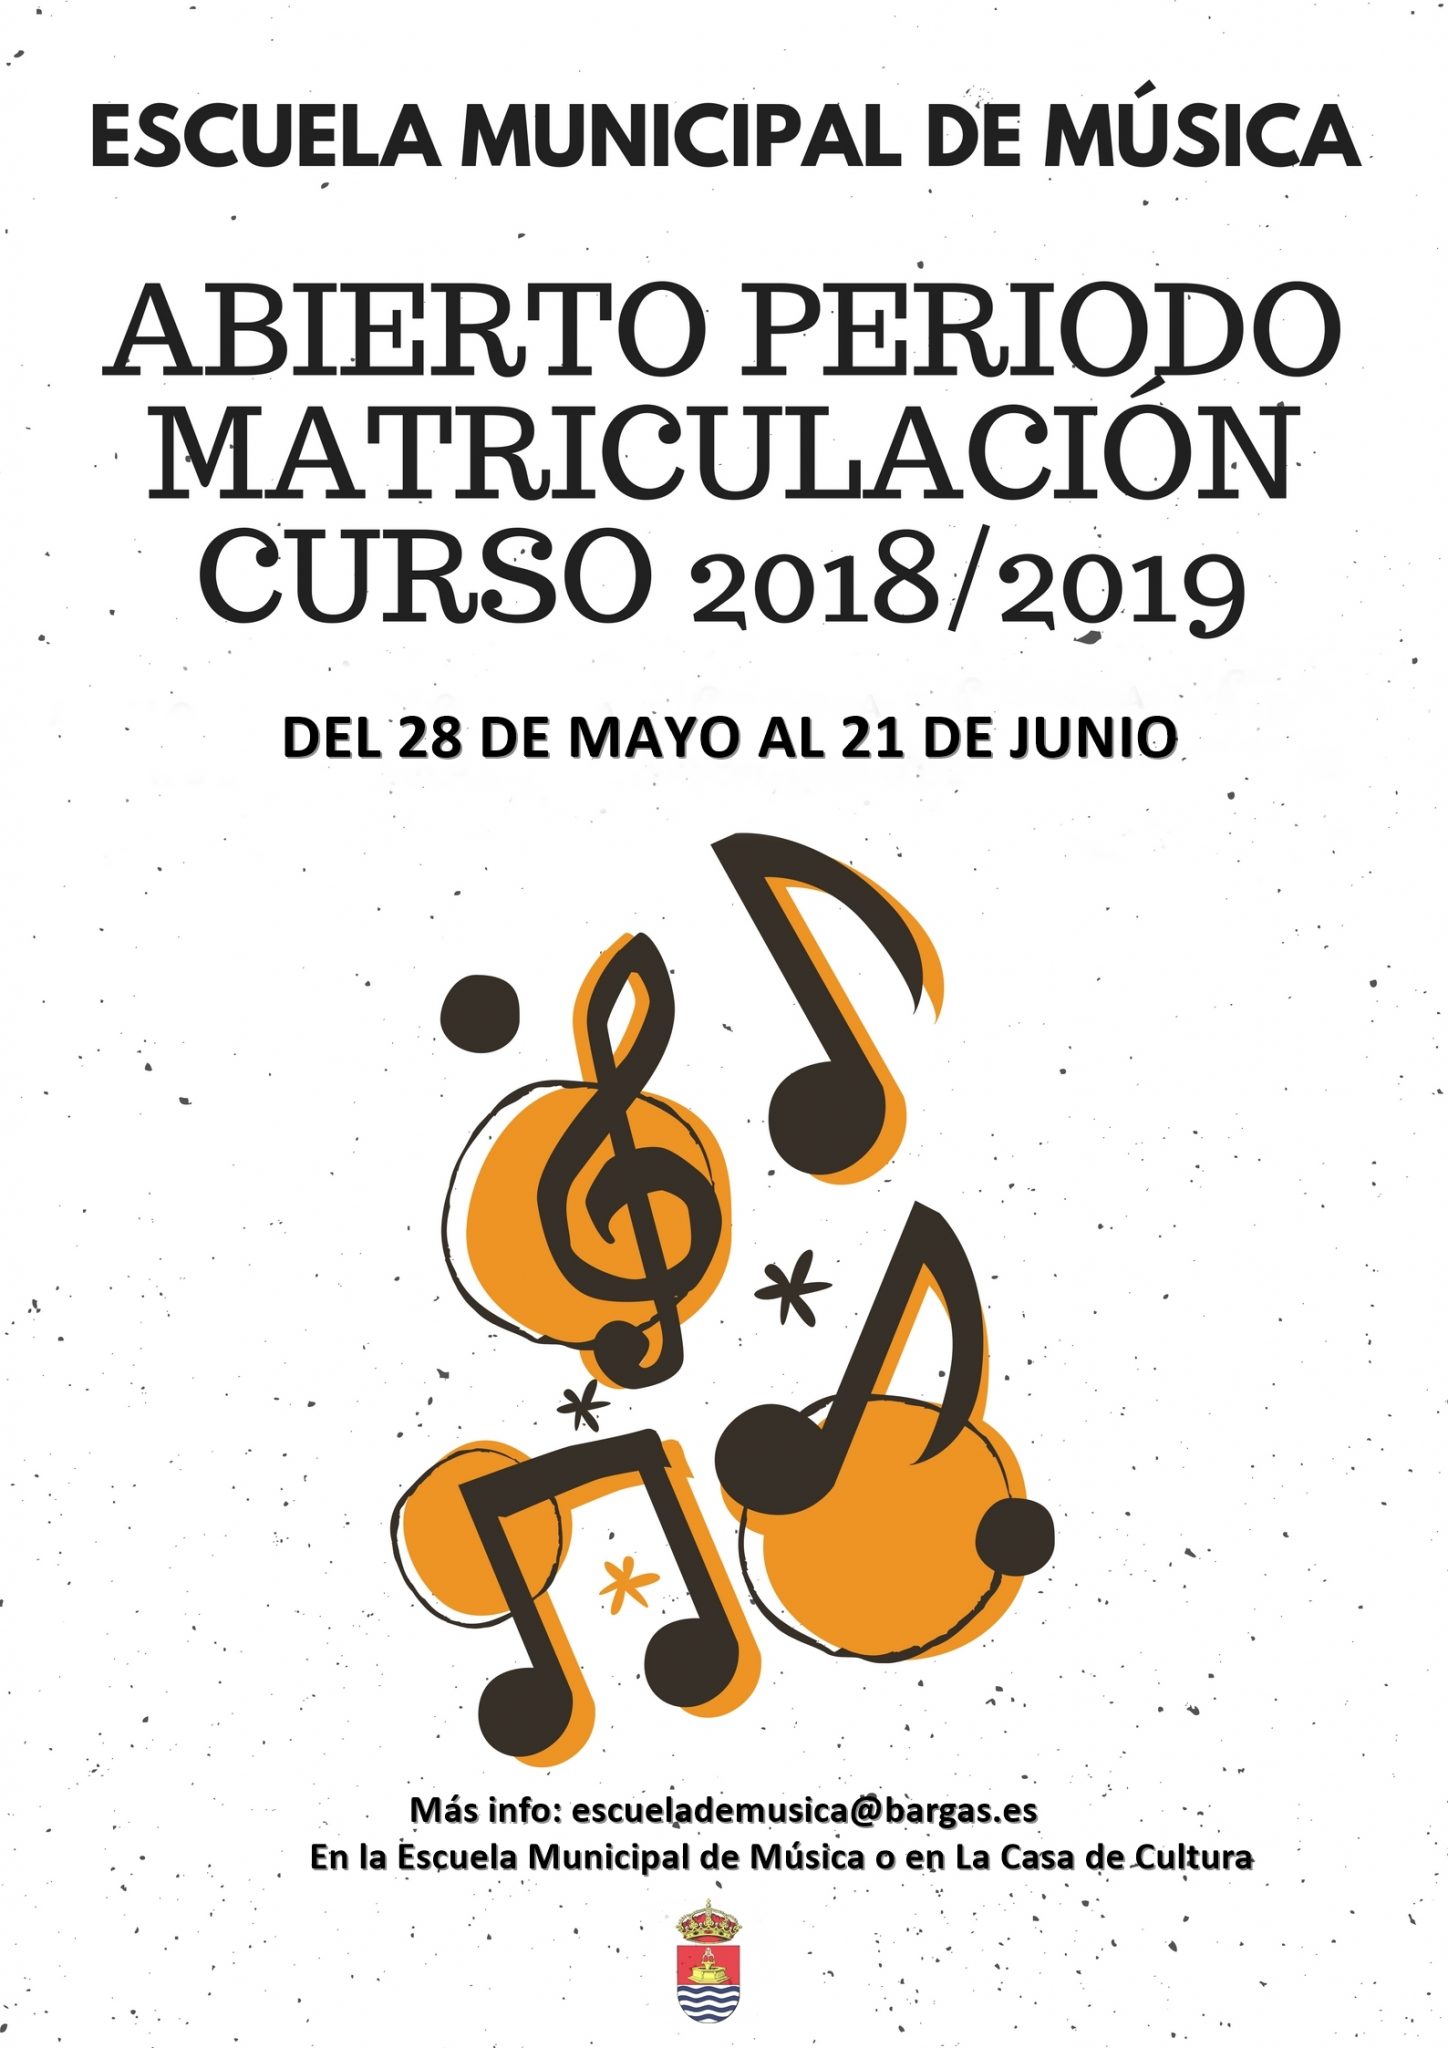 Abierto el período de matriculación de la Escuela Municipal de Música 2018/2019